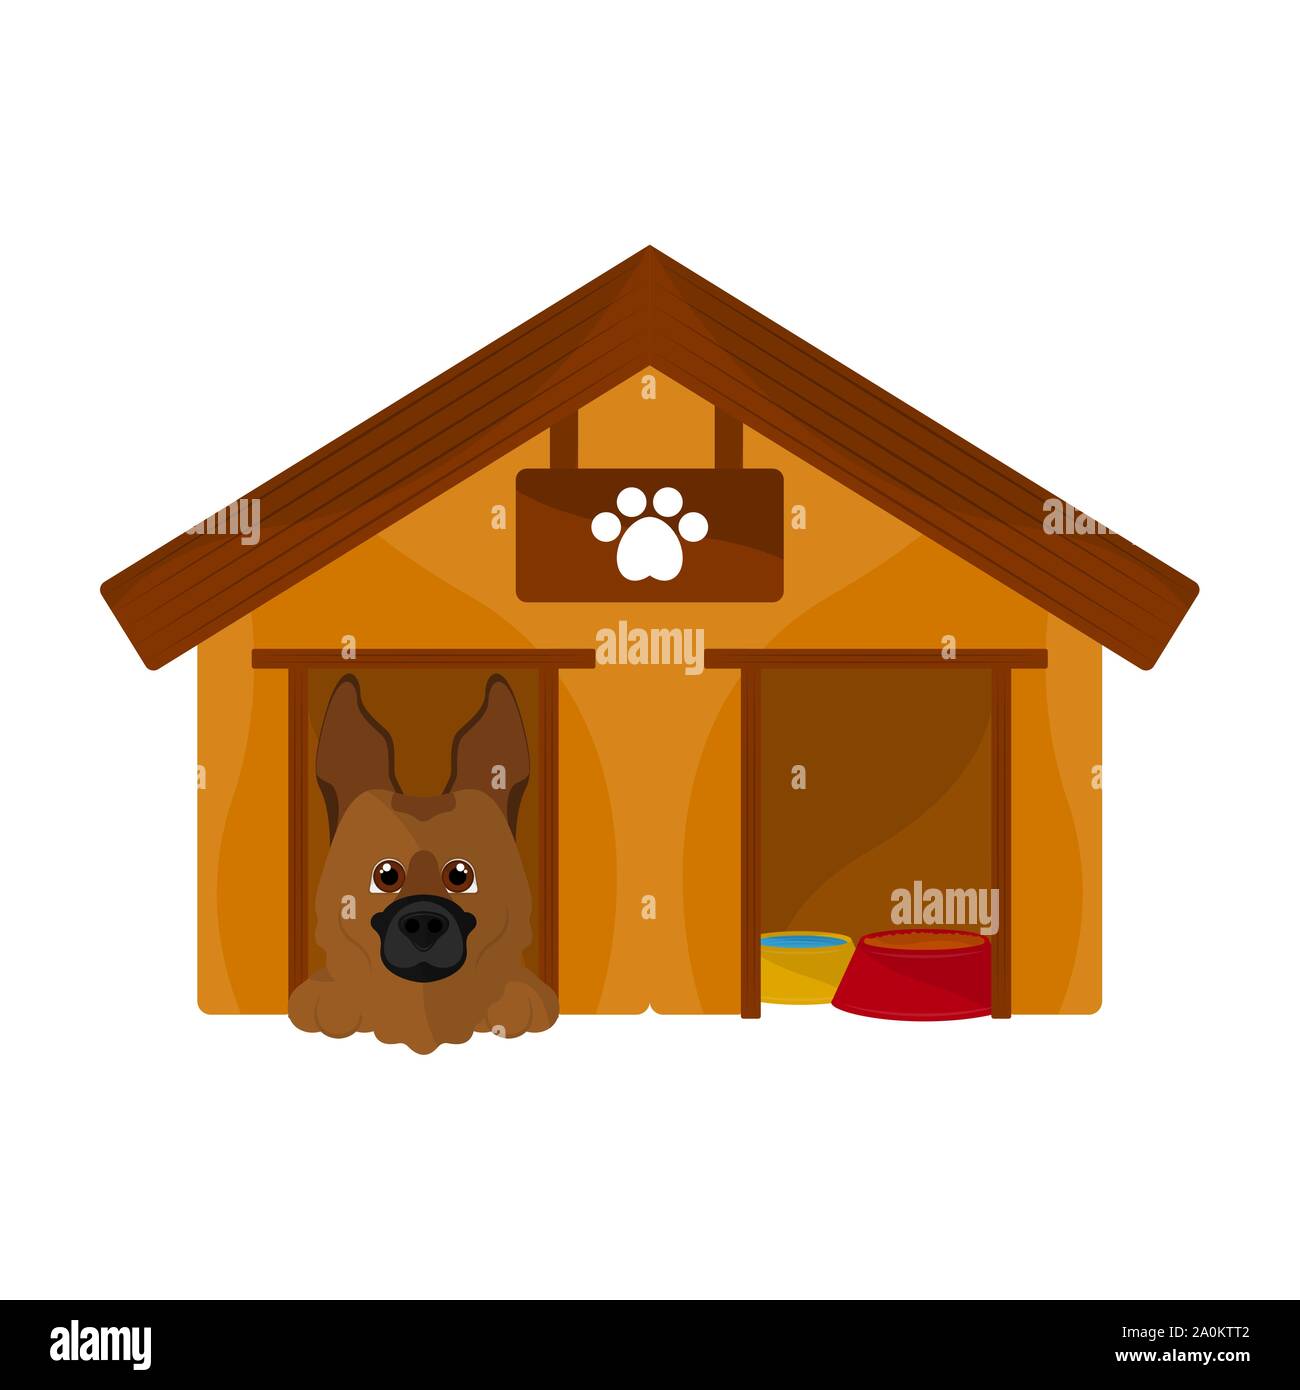 Dog house with a cute dog cartoon - Vector Stock Vector Image ...